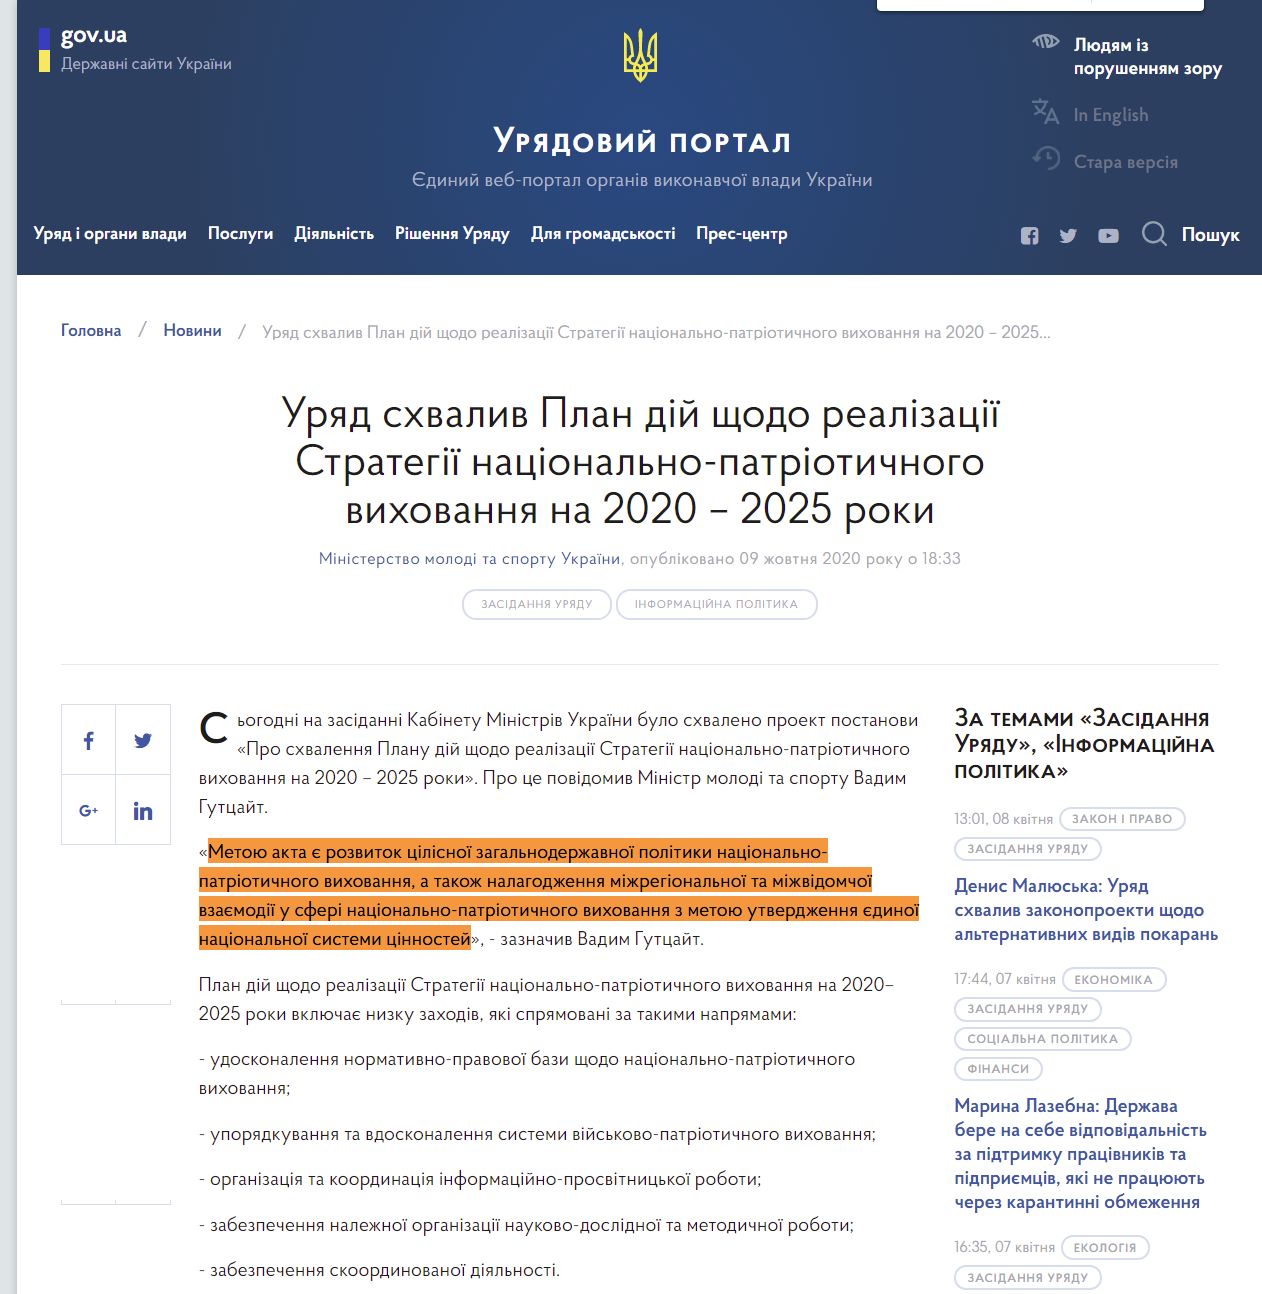 https://www.kmu.gov.ua/news/uryad-shvaliv-plan-dij-shchodo-realizaciyi-strategiyi-nacionalno-patriotichnogo-vihovannya-na-2020-2025-roki